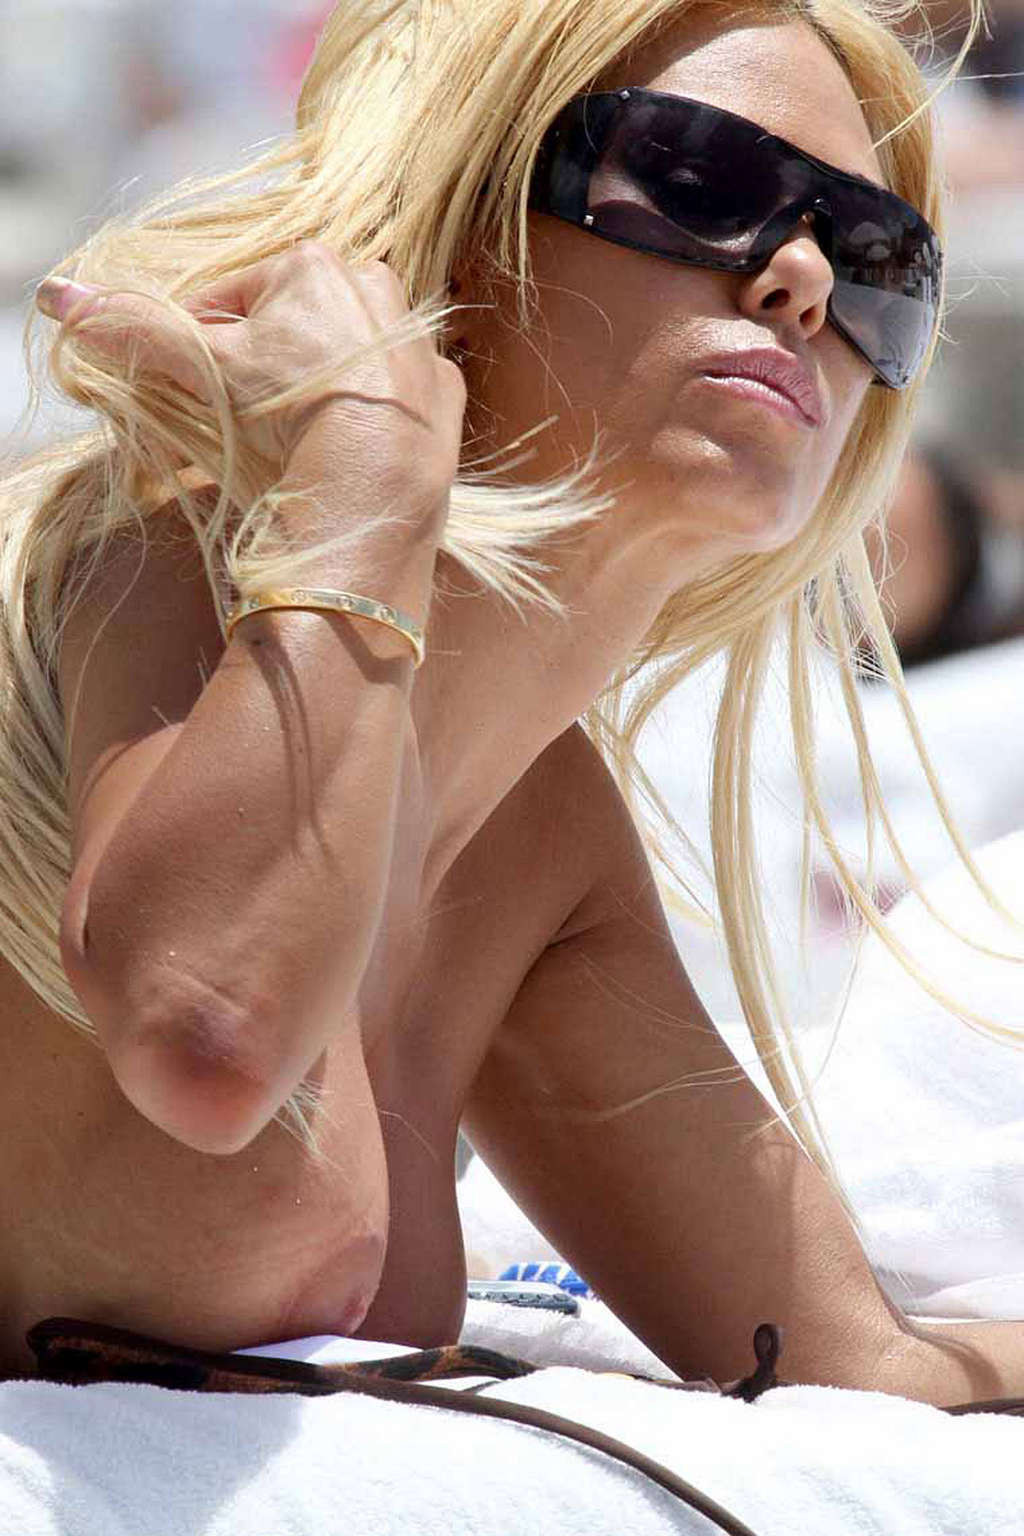 Shauna sand et sa copine posent seins nus et en bikini sur une plage, photo paparazzi.
 #75349738